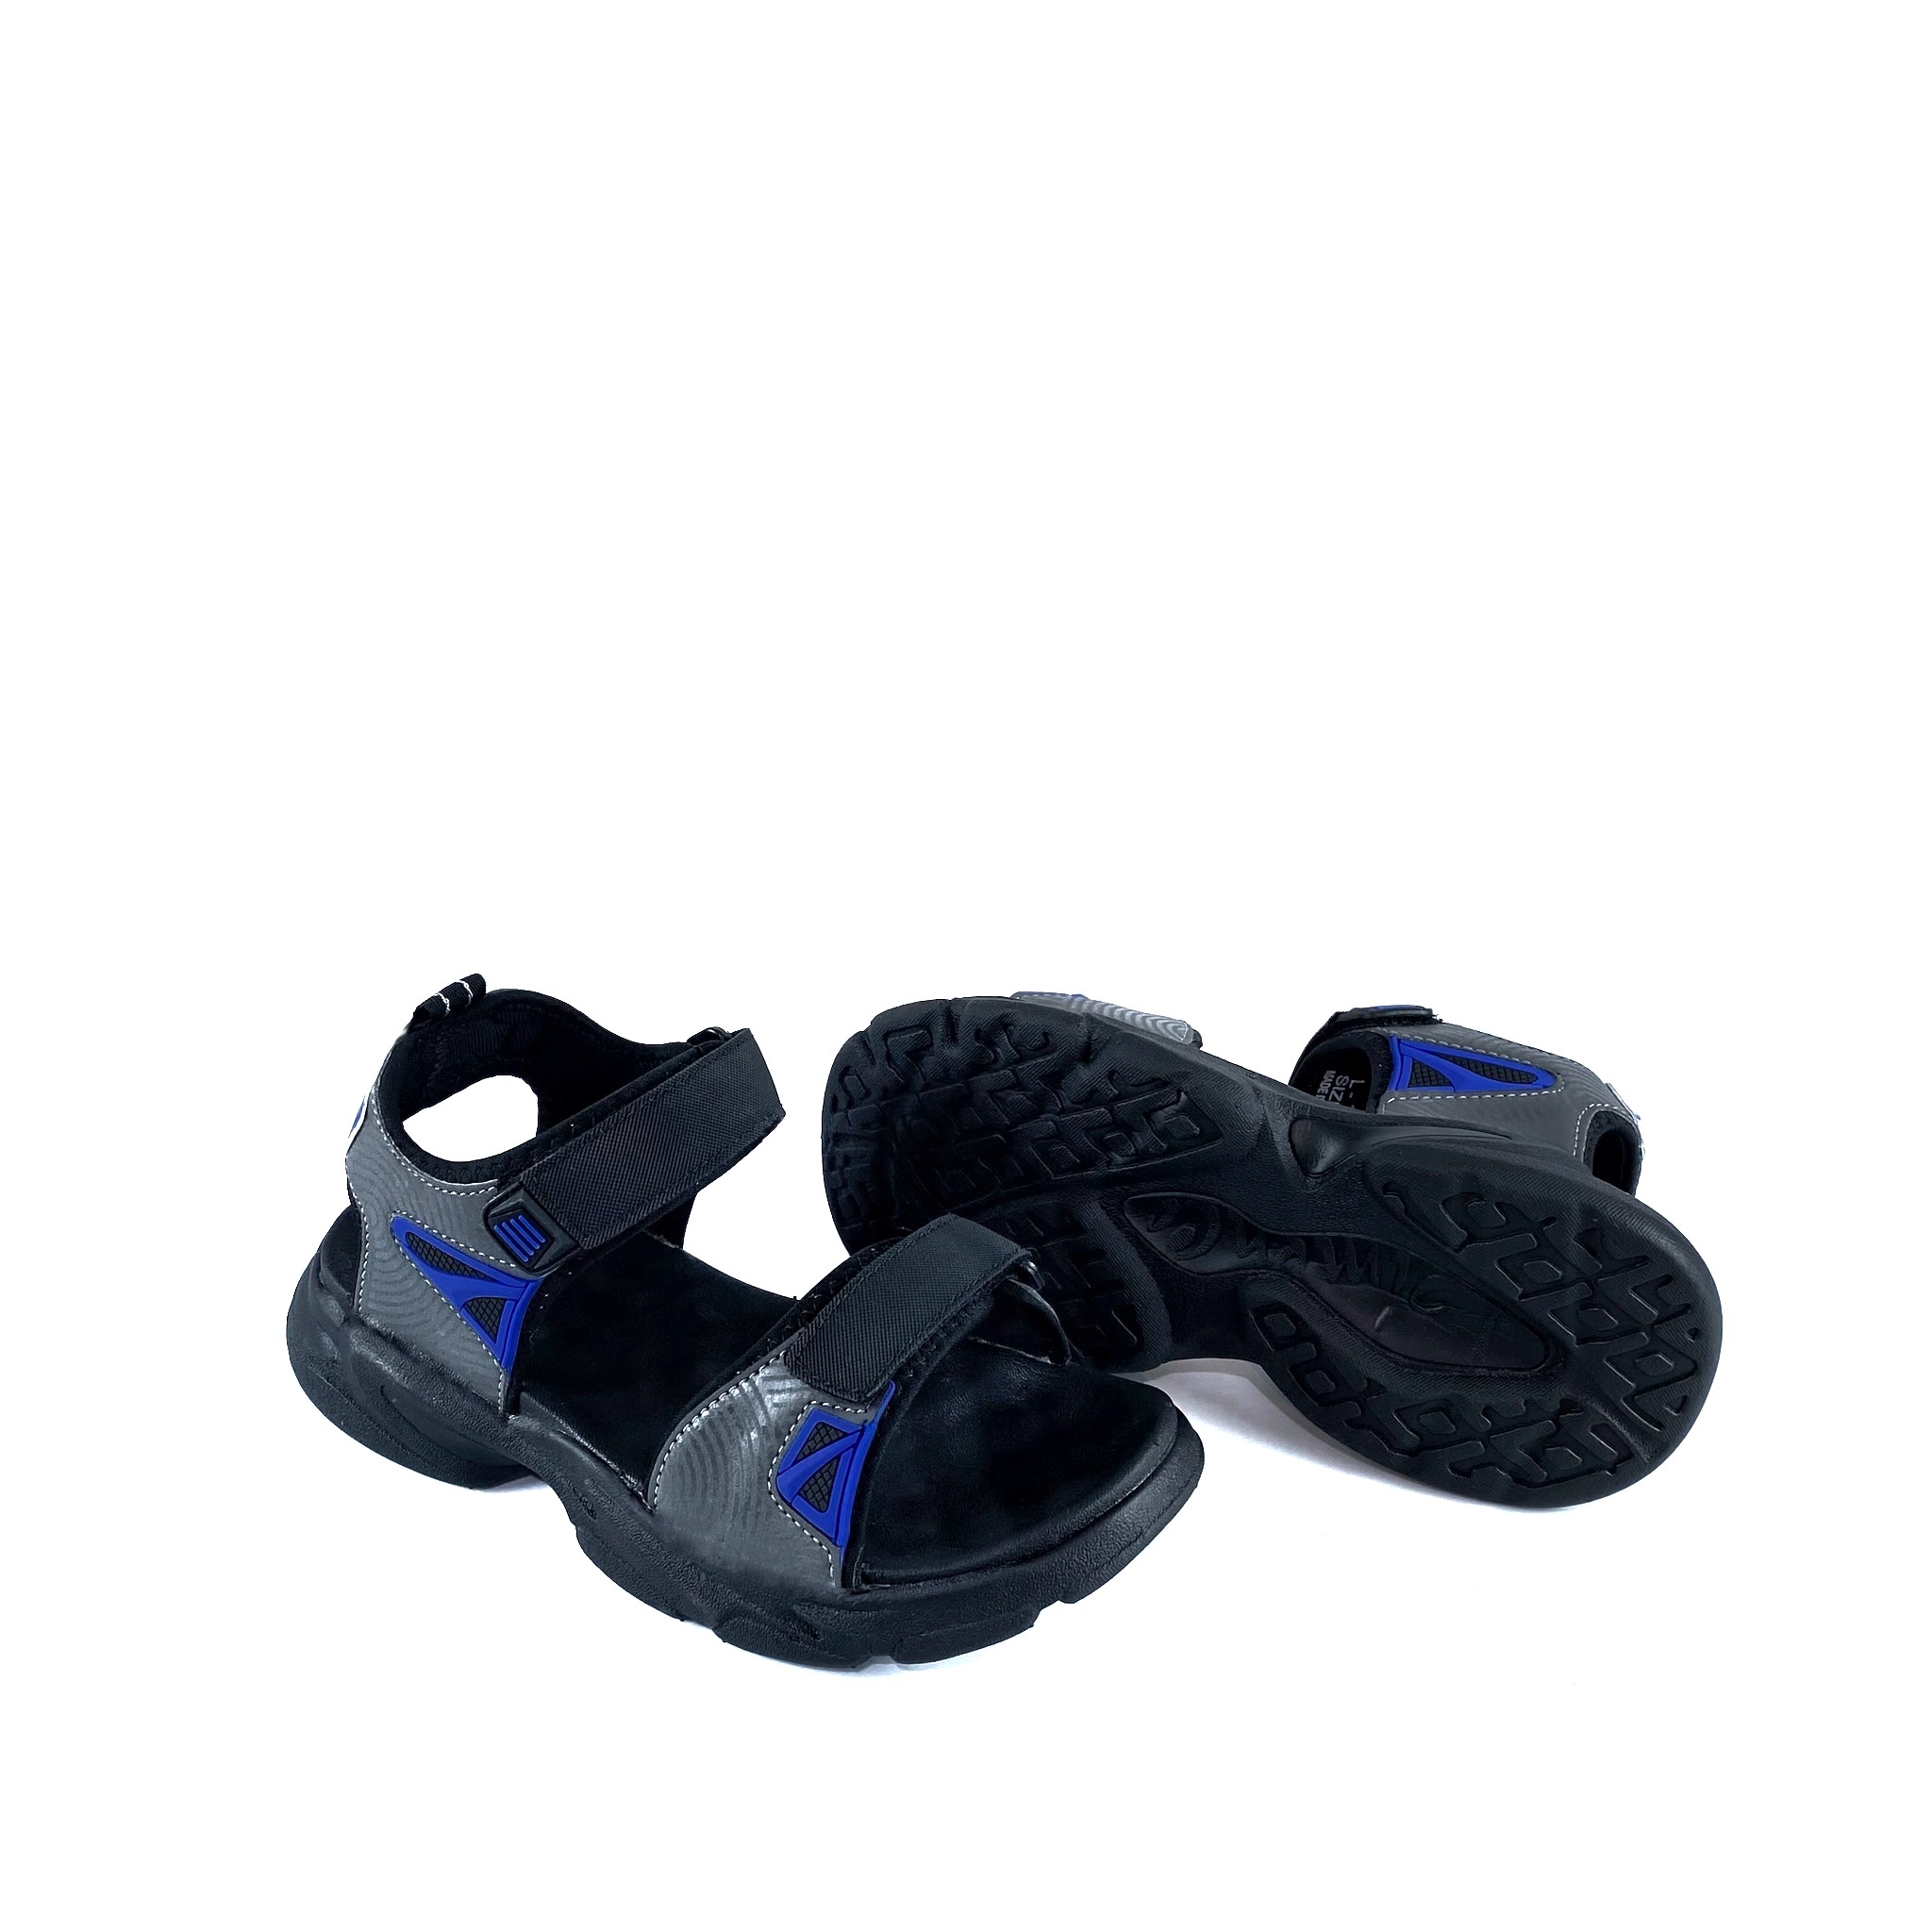 Giày Sandal Bé Trai L1881 Màu Xanh Dương, êm nhẹ, thoáng khí, đi học, đi chơi